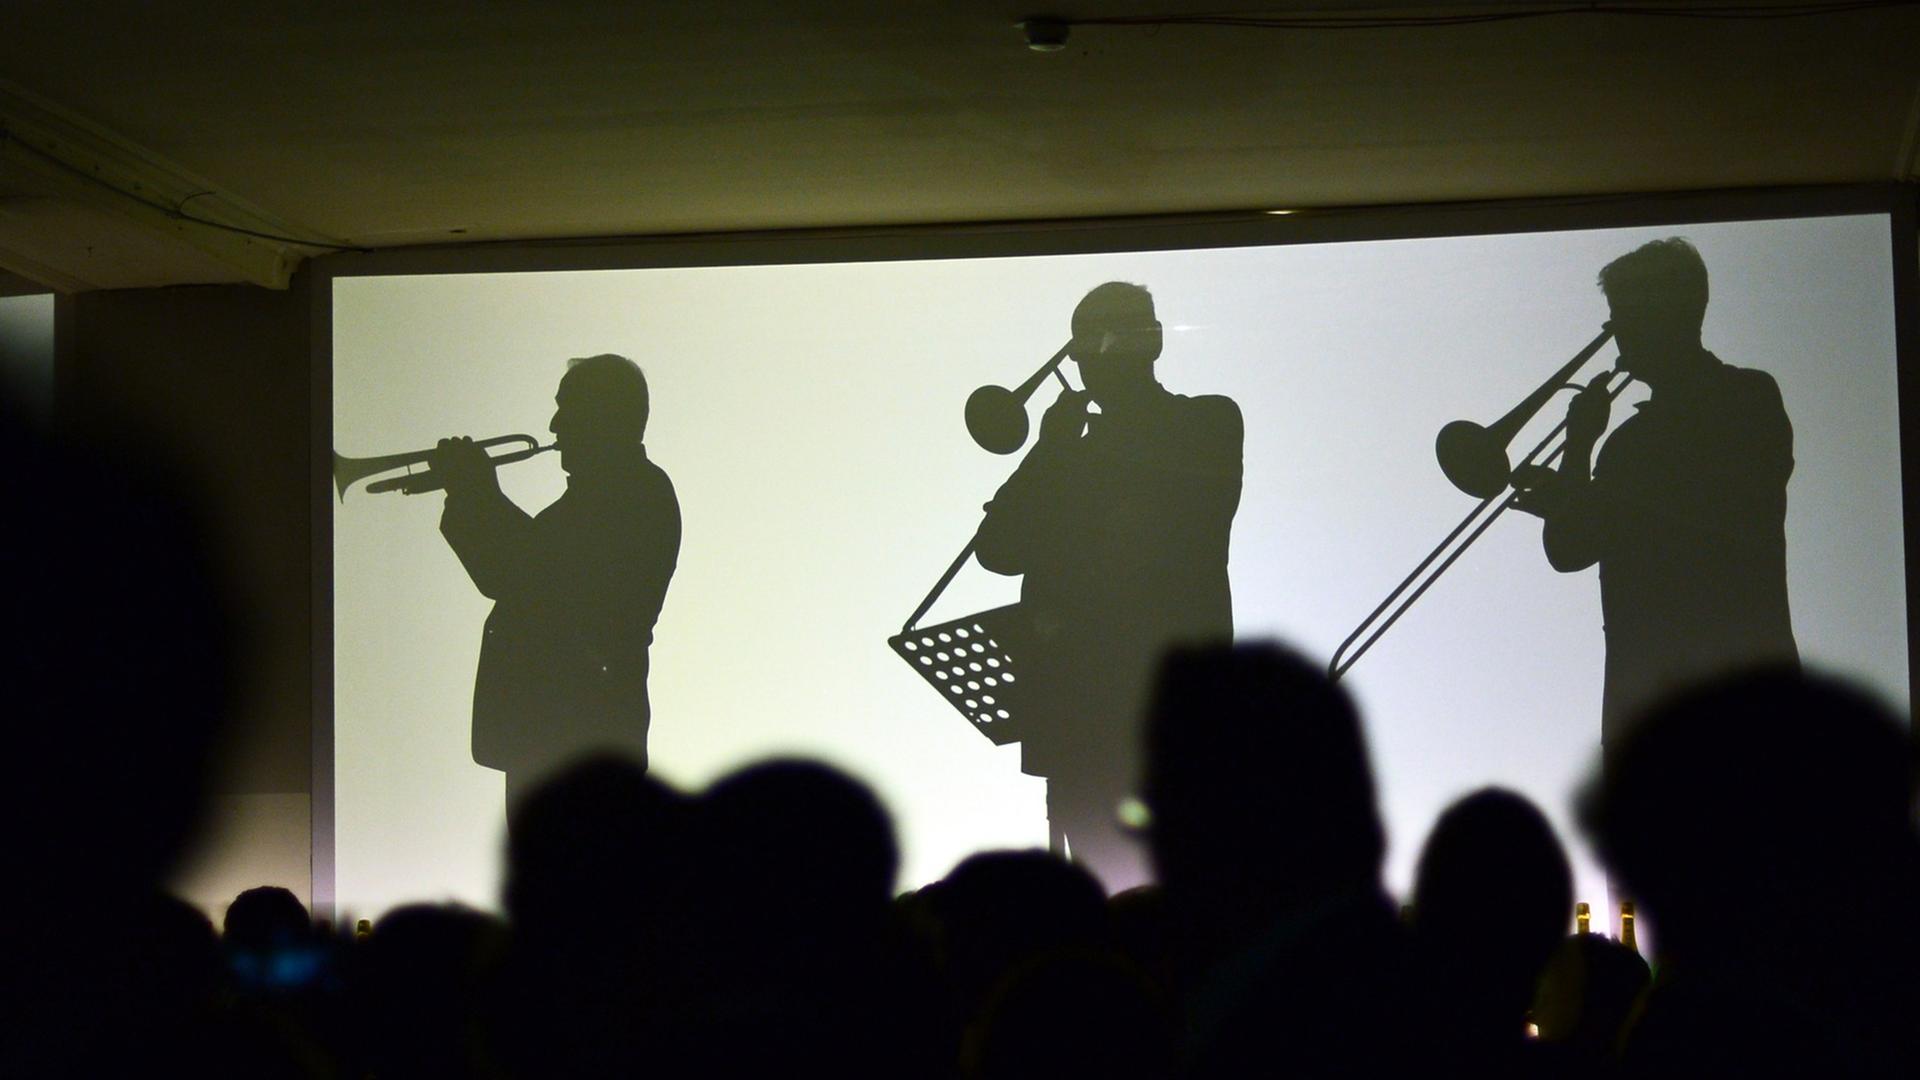 Die Silhouetten von live spielenden Orchestermusikern sind am 05.02.2014 in Berlin auf dem Champagnerempfang Moët & Chandon Grand Scores im ehemaligen Kaufhaus Jandorf auf Leinwänden zu sehen